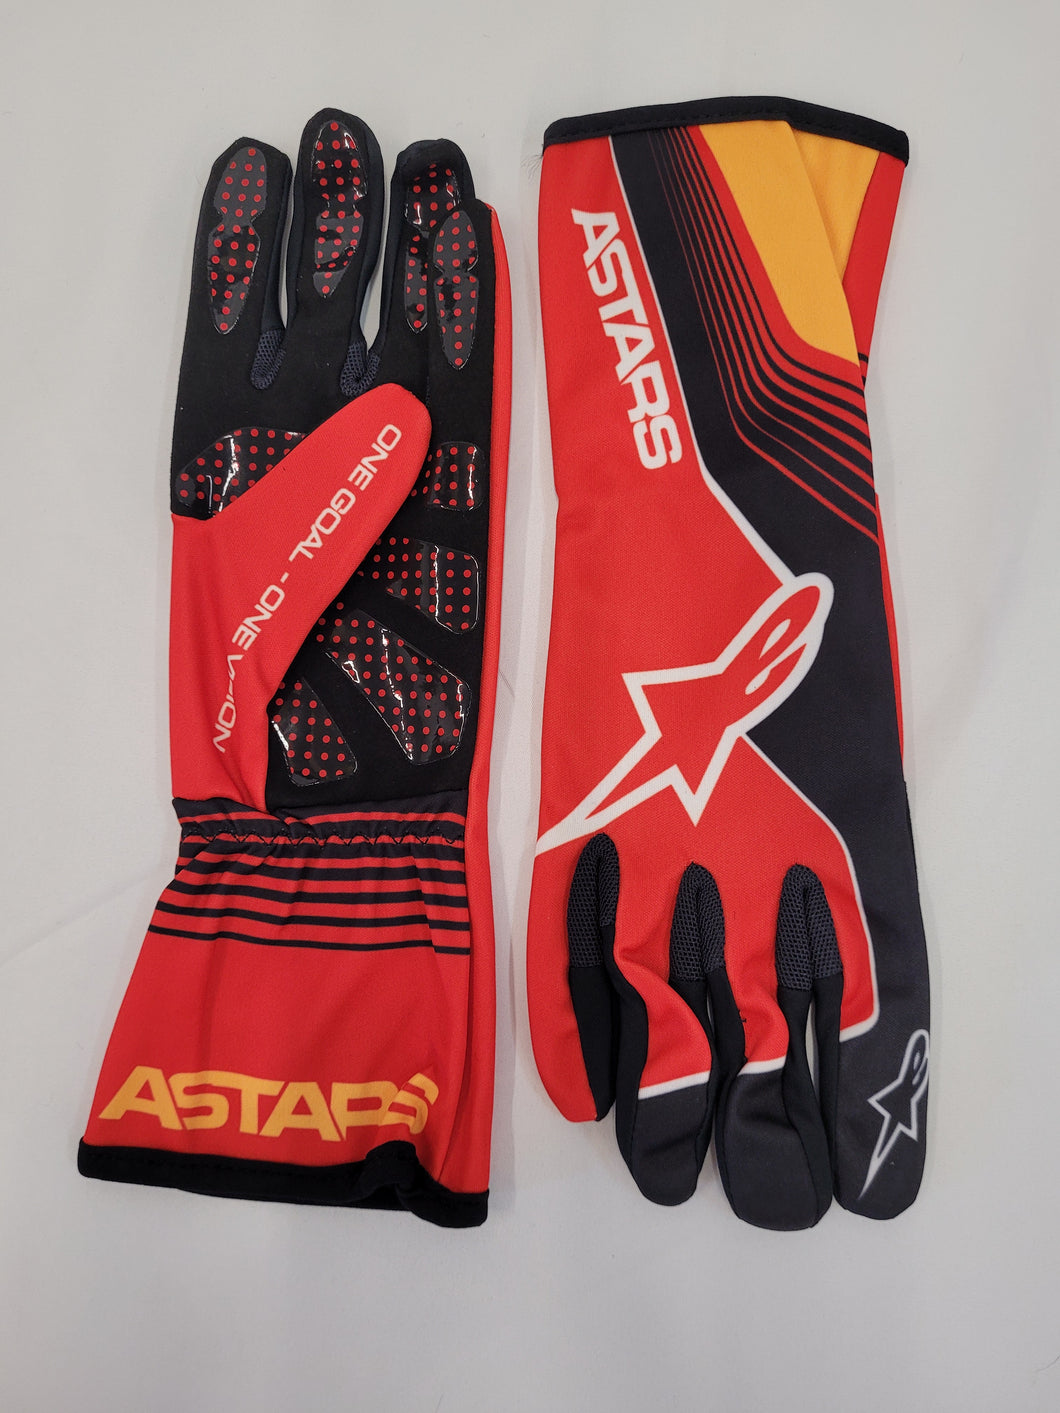 AlpineStars Tech 1K Race Future Gloves (Adult)